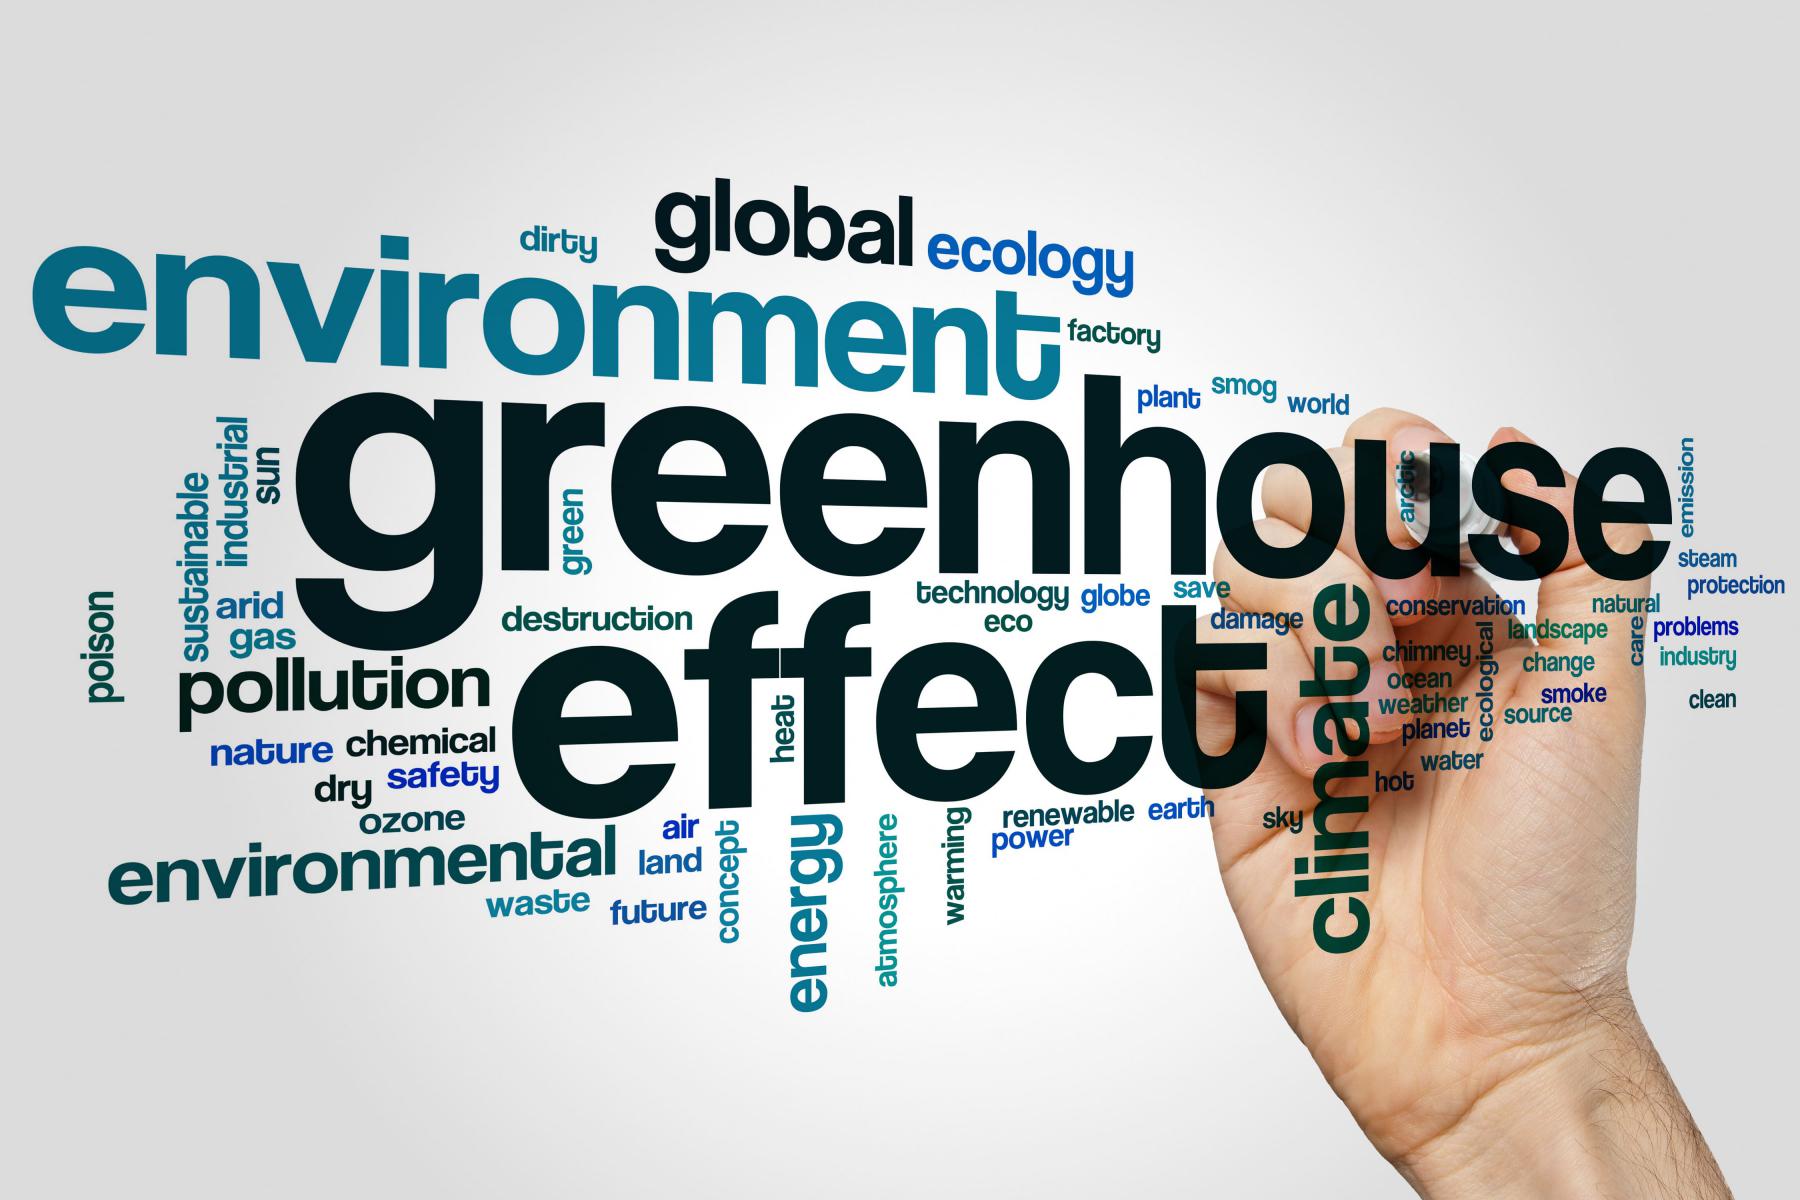 英語でgreenhouse effect, environment, global ecology, polutionなど環境に関連するキーワードが並んでいる